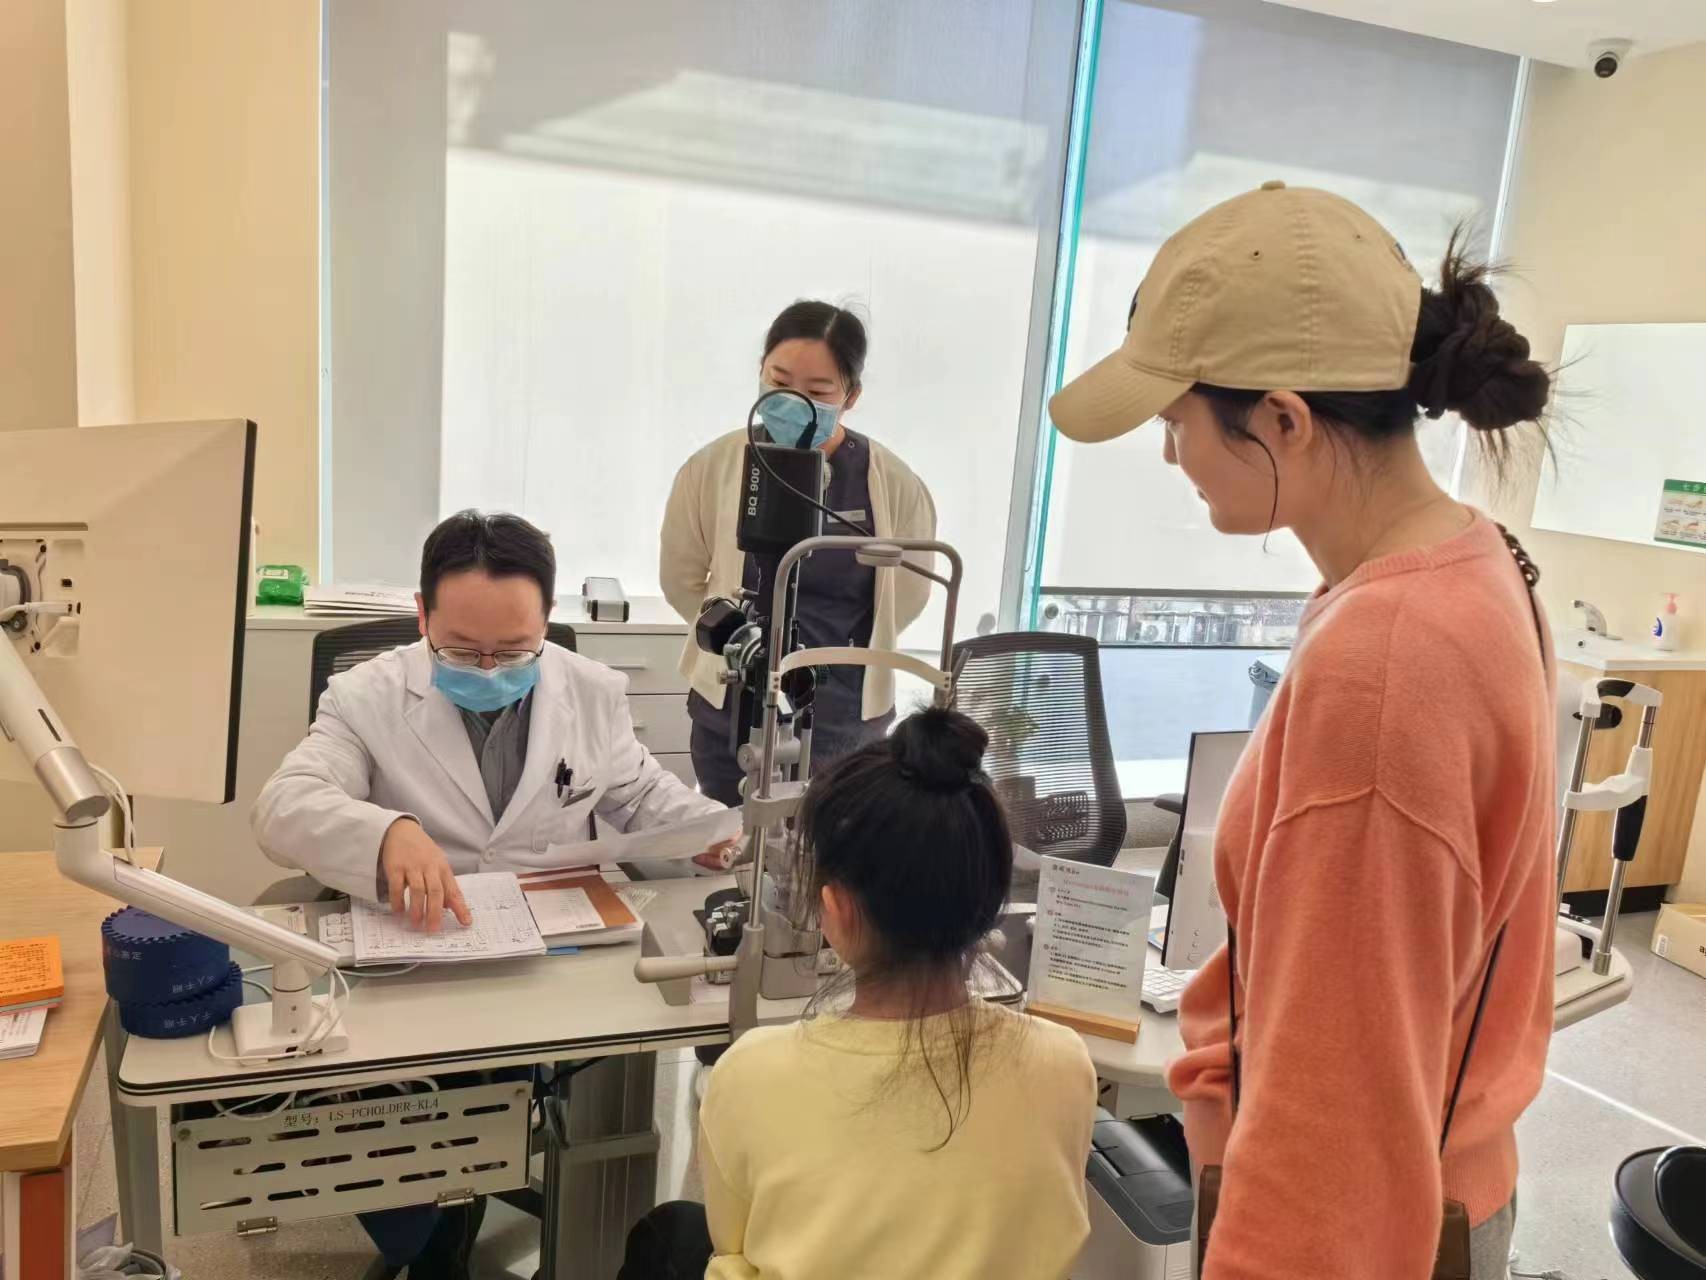 茗视光眼科建国门院区成立北京儿童医院眼科专家“青少年视力发育管理工作室” 世界热议